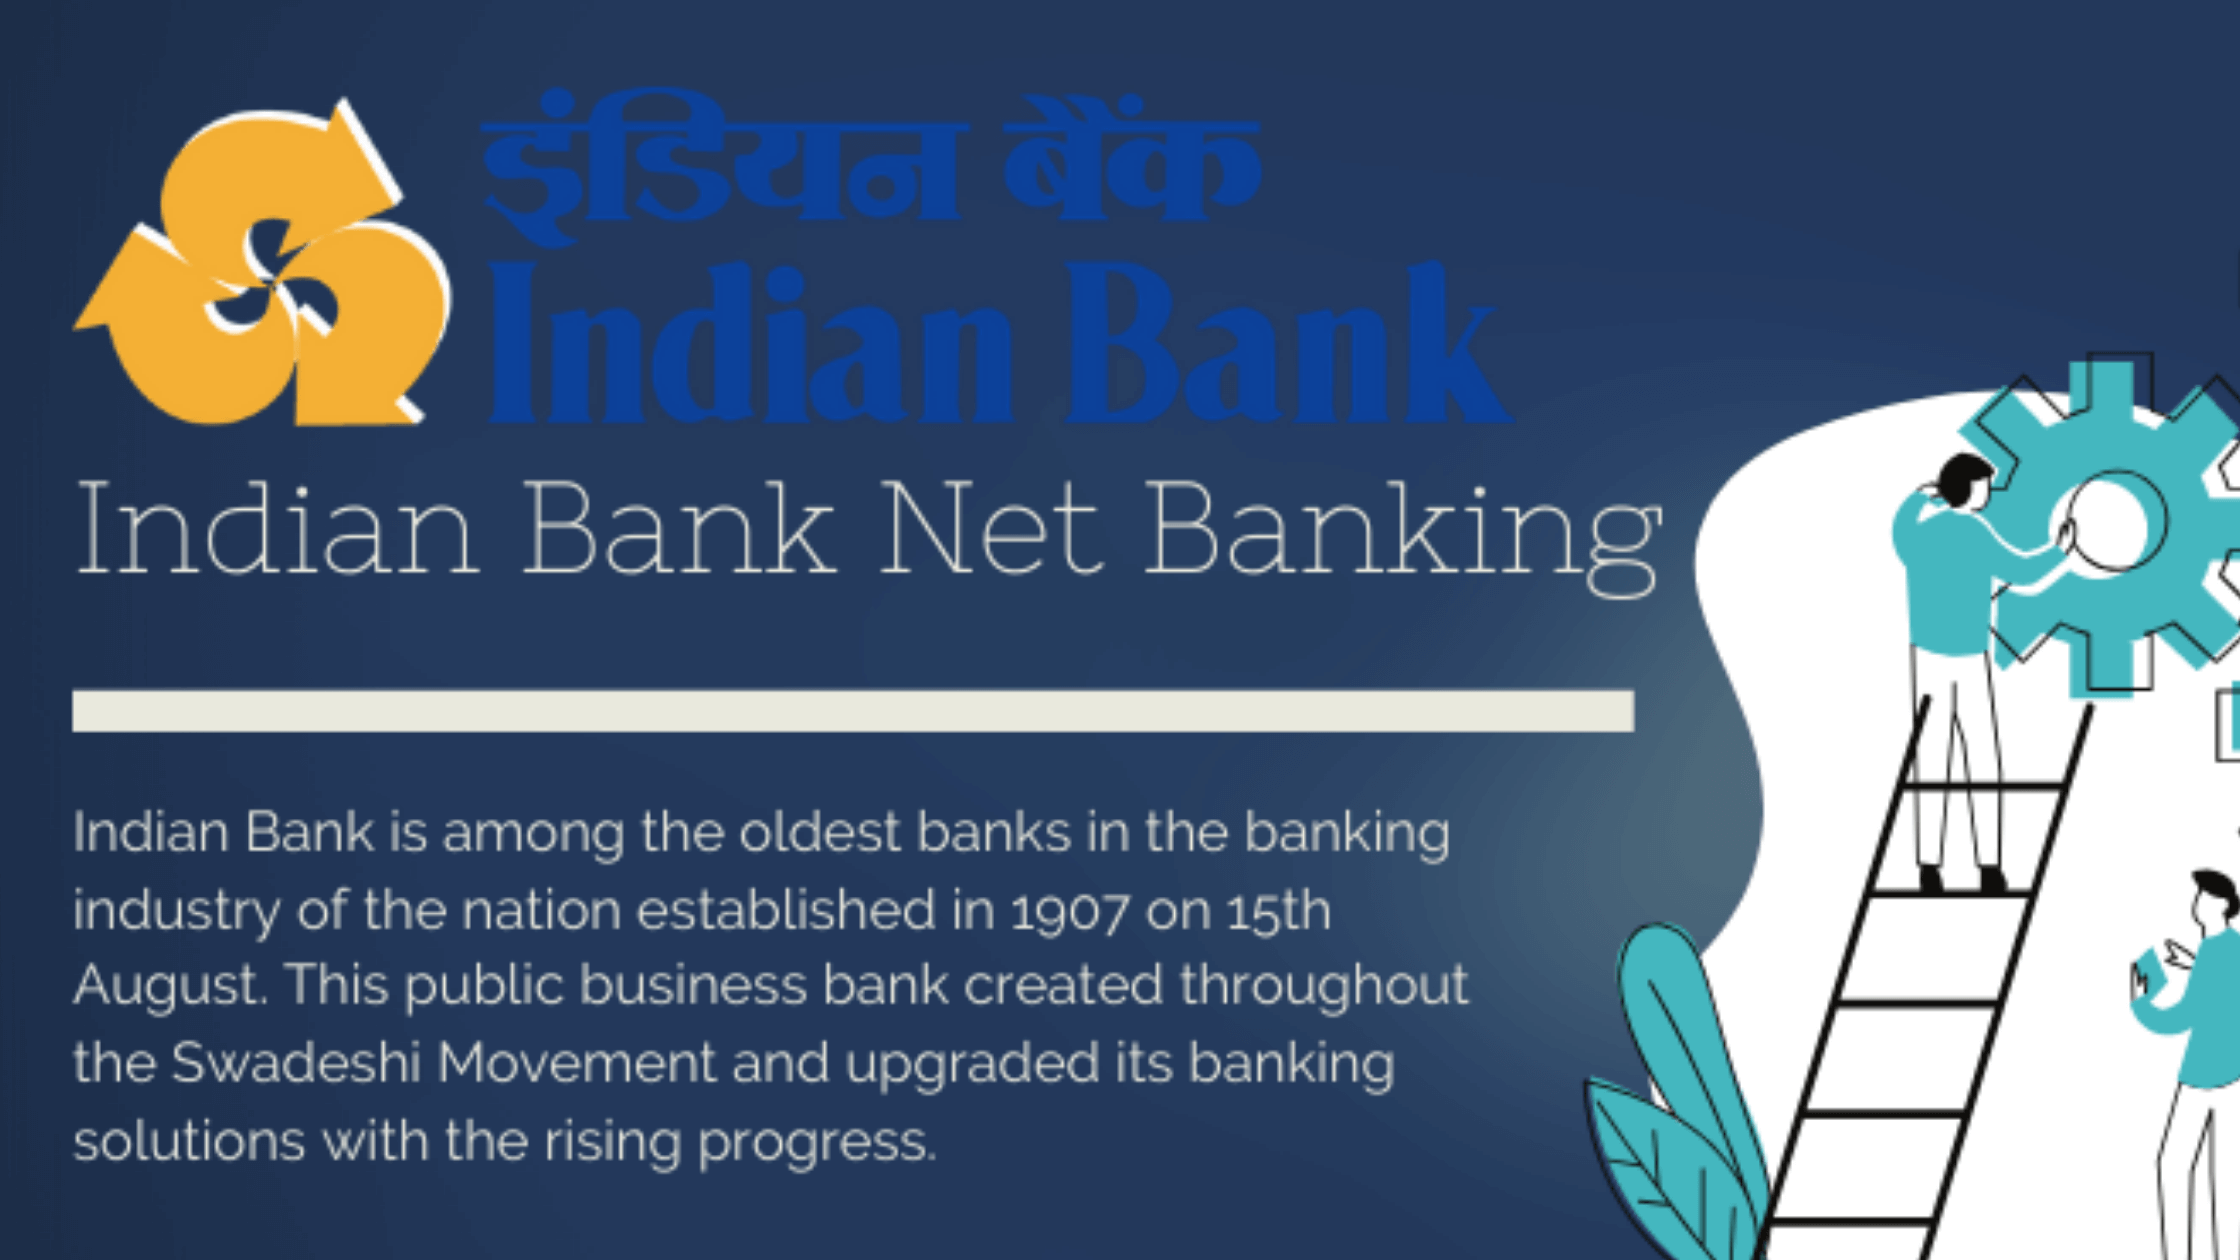 Indian Bank Net Banking (2) (1)